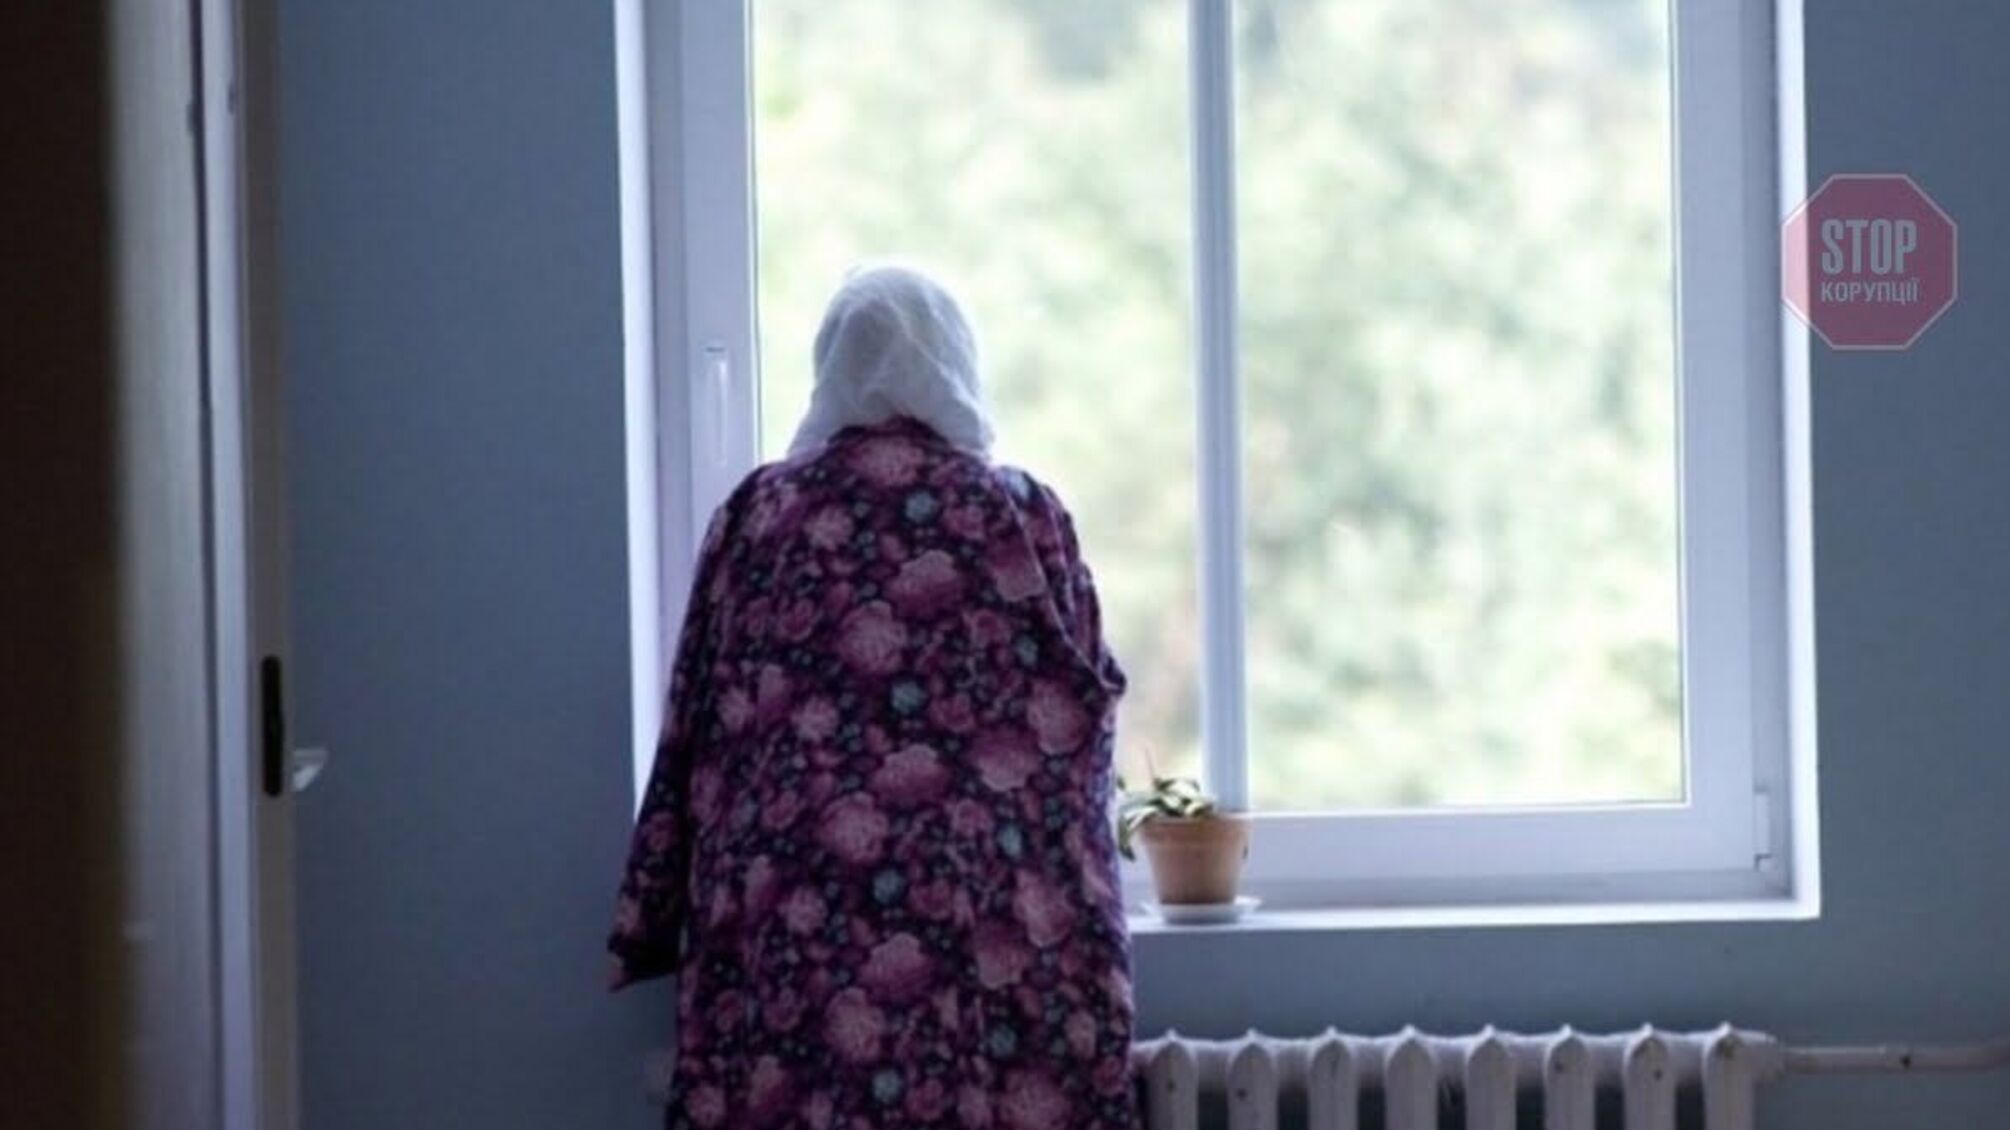 Одяглася та вистрибнула з вікна: на Дніпропетровщині загинула пенсіонерка (фото 18+)